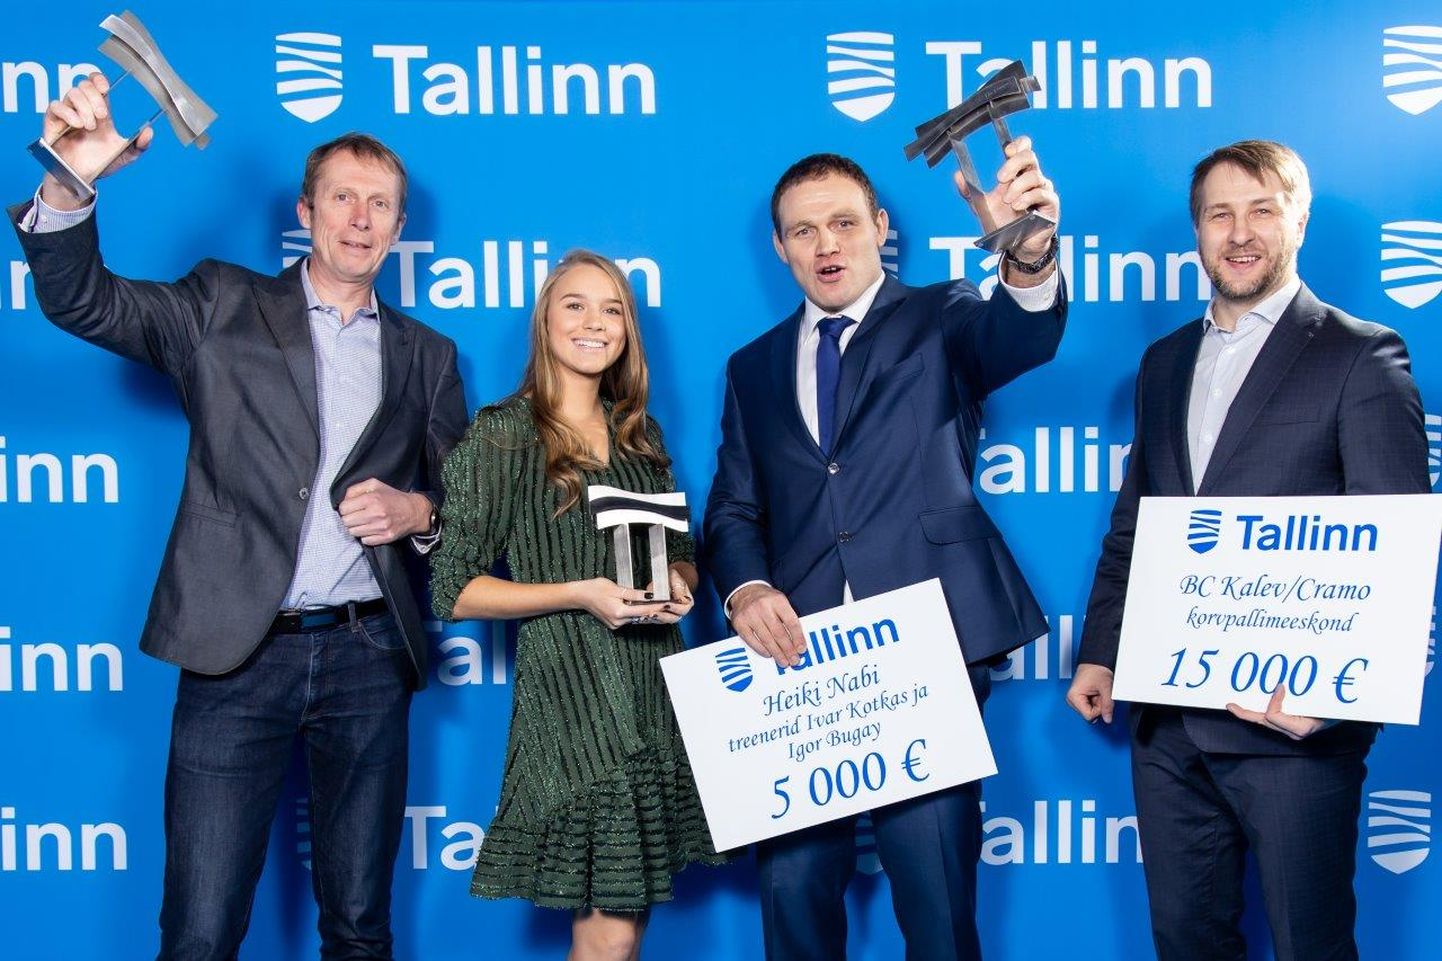 Лучшими спортсменами года в Таллинне названы Анетт Контавейт и Хейки Наби.